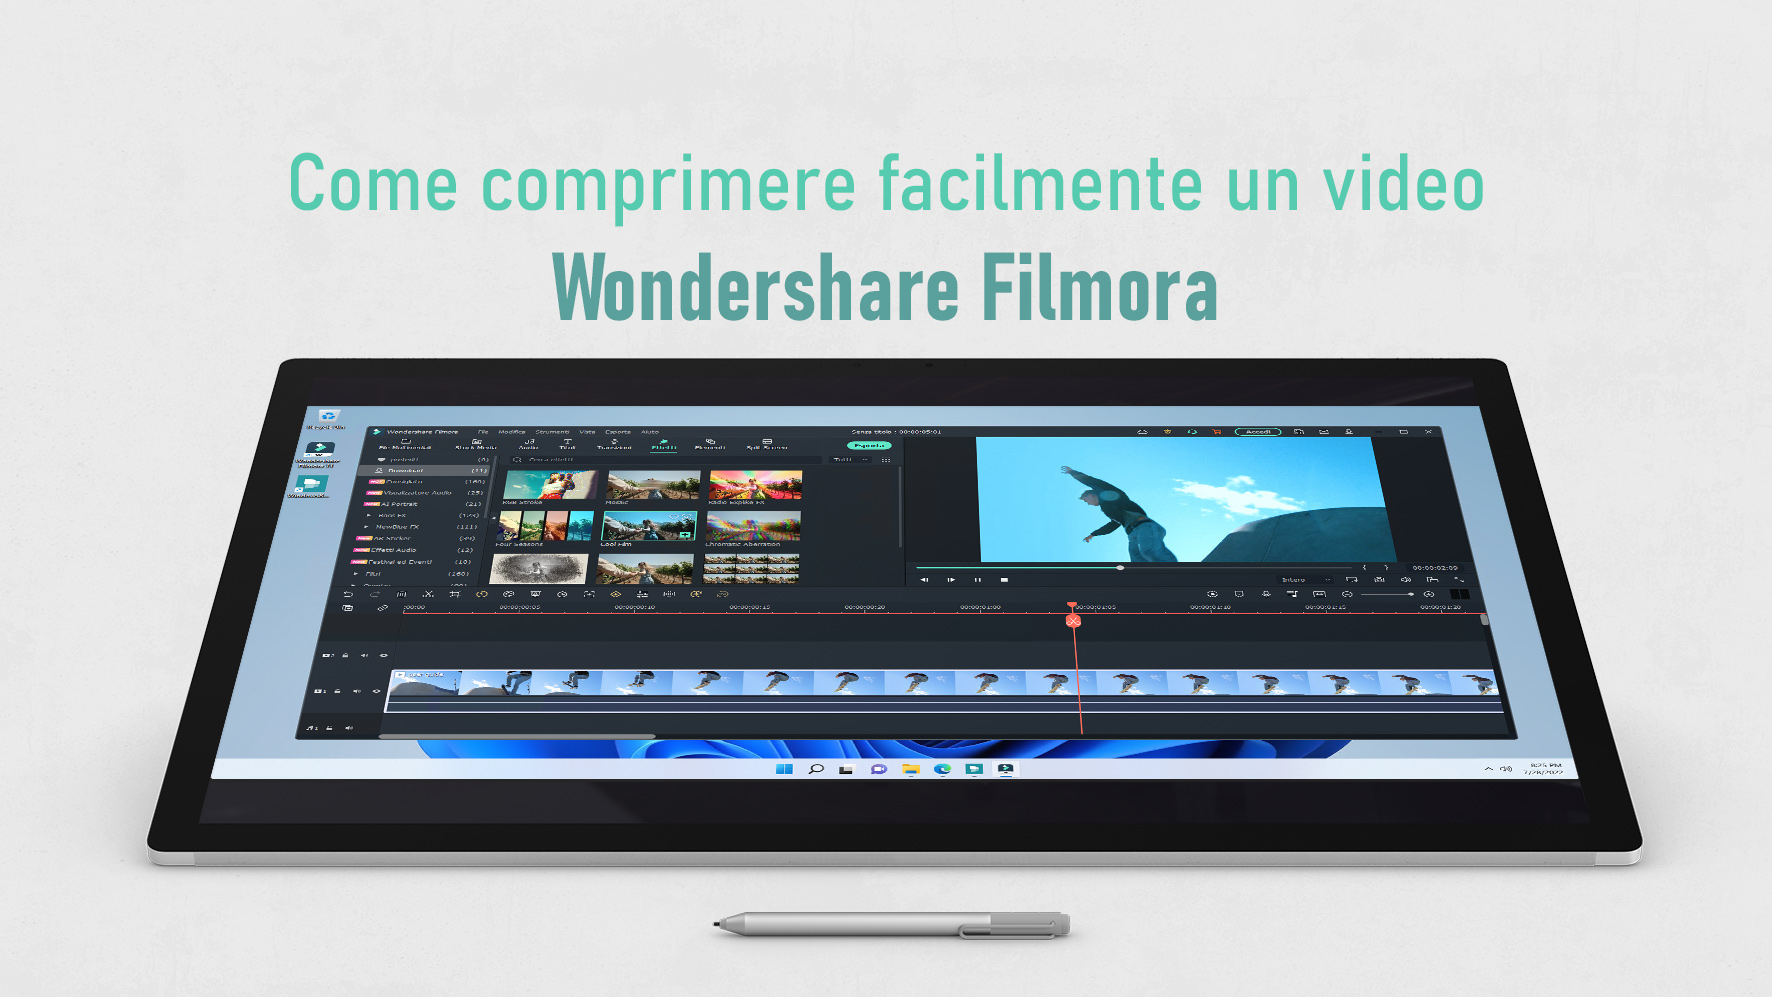 Come comprimere facilmente un video con Wondershare Filmora